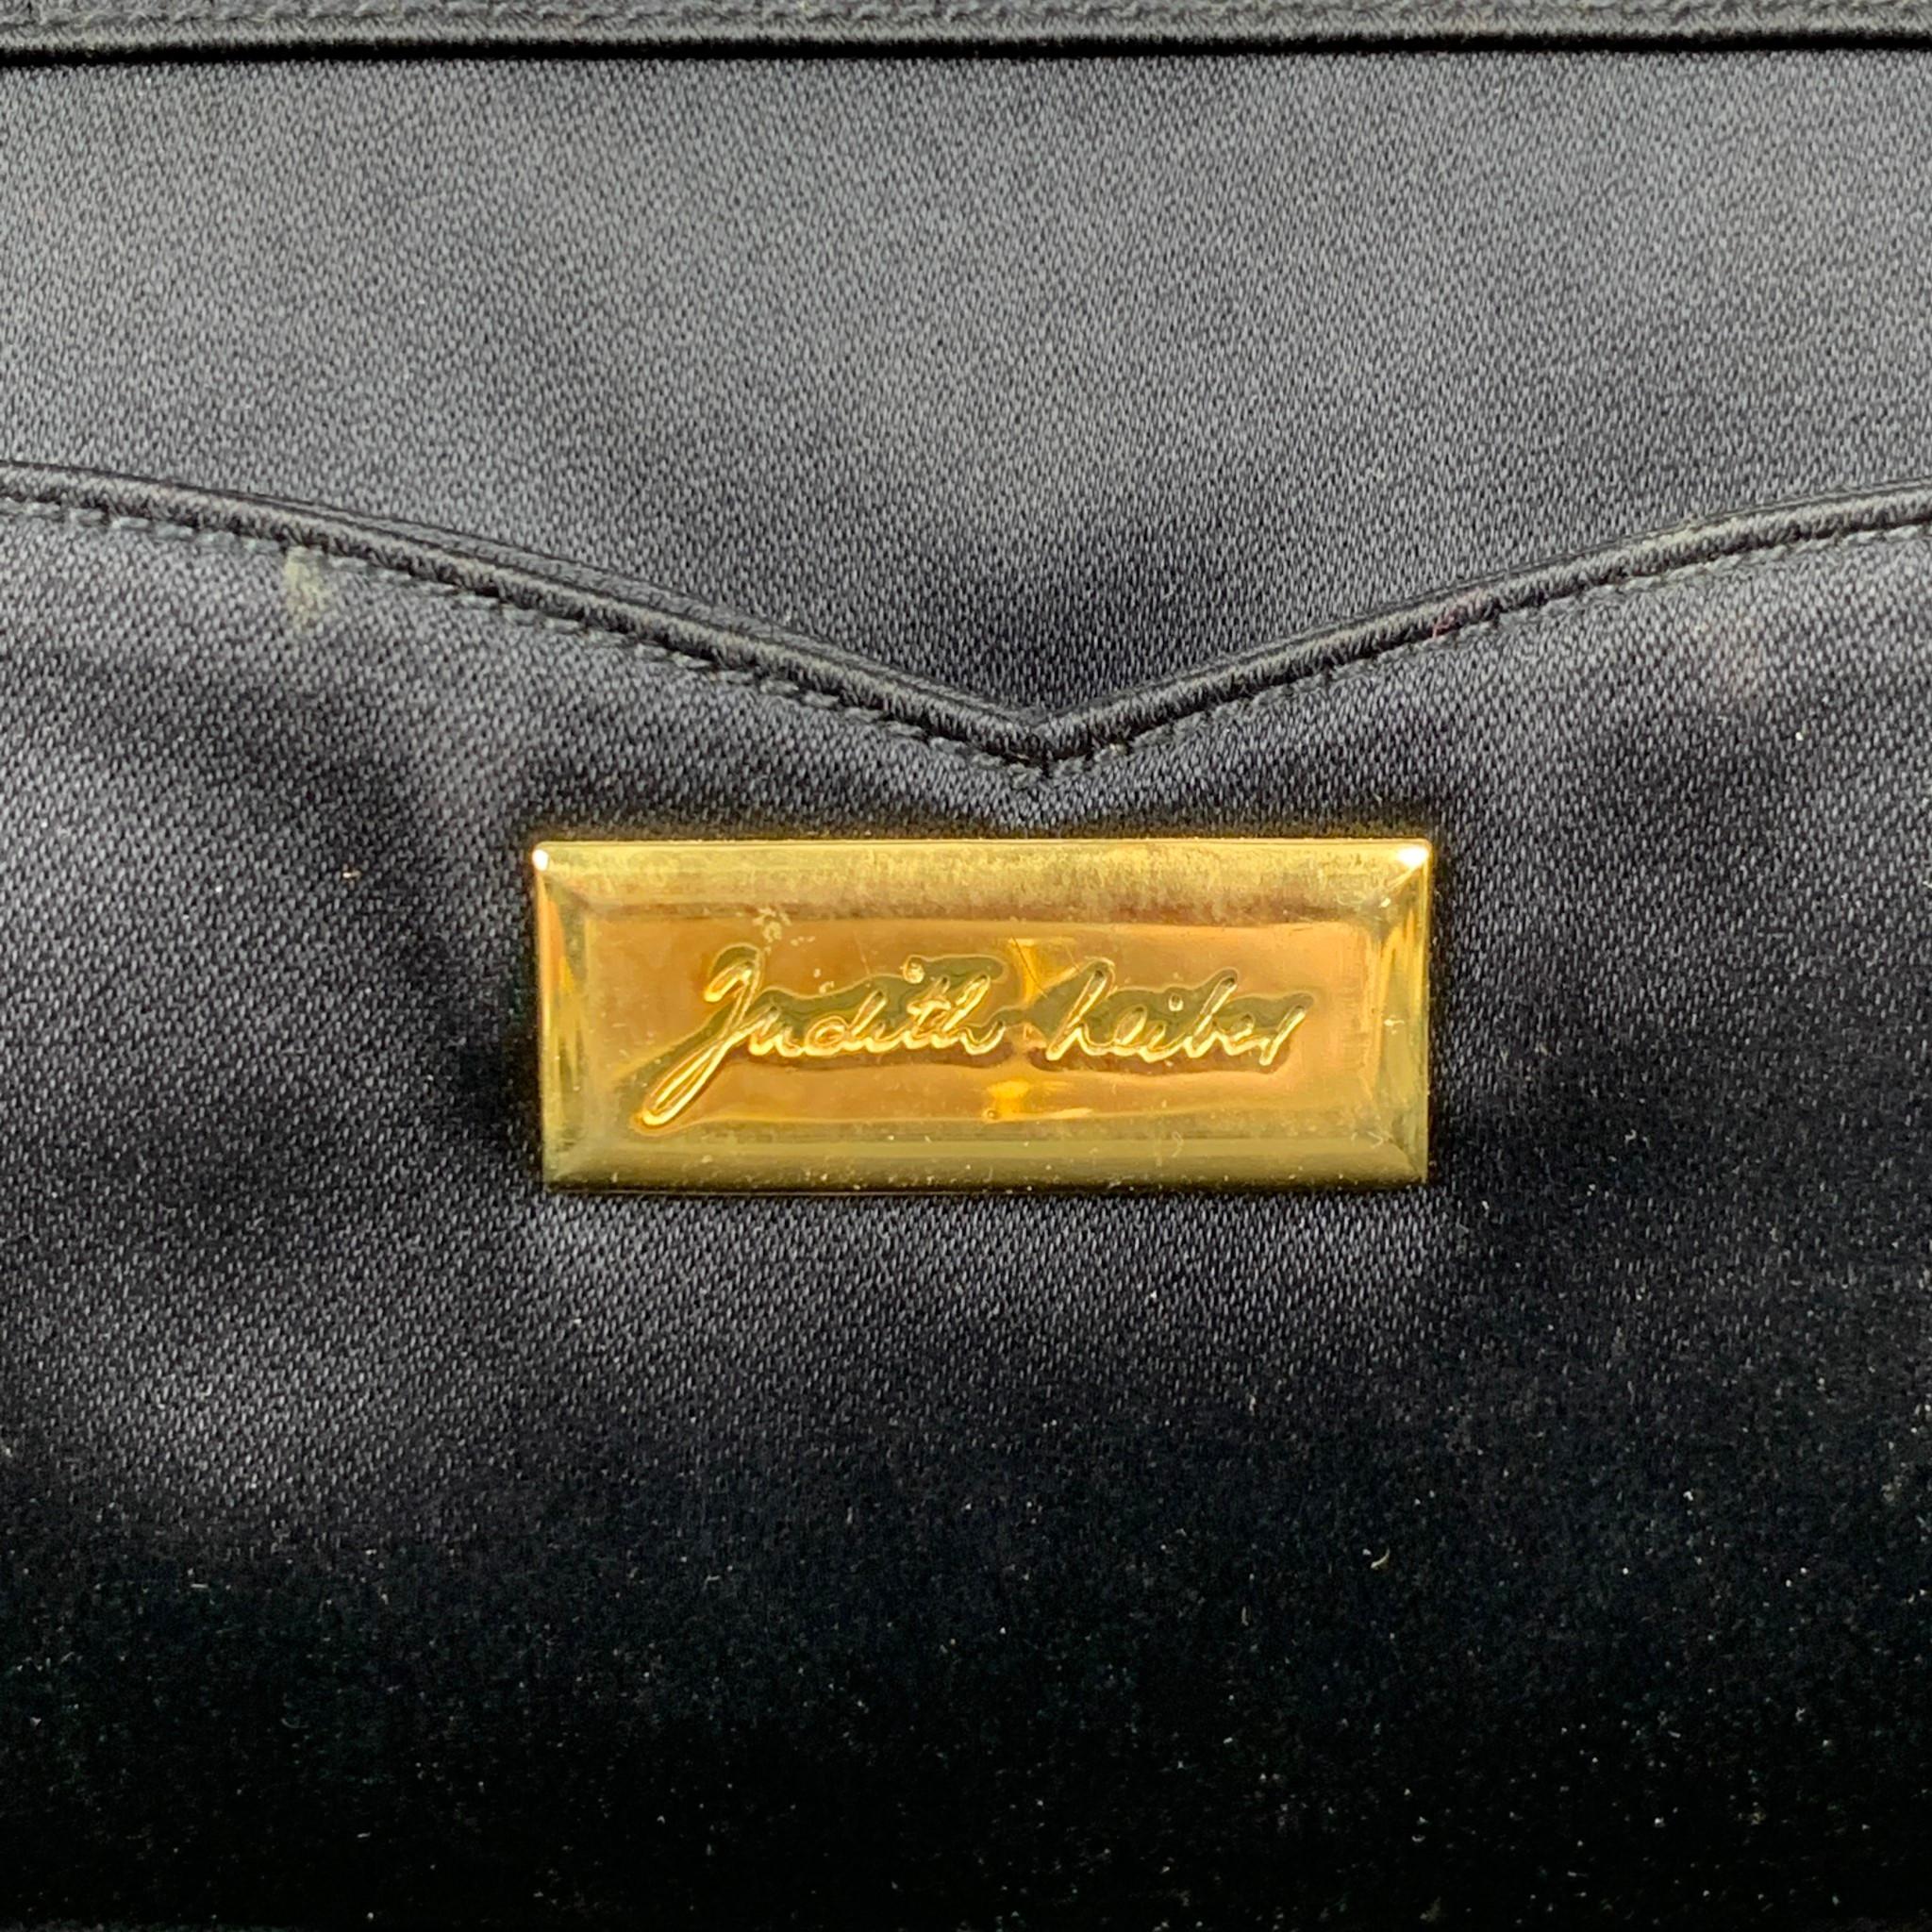 Vintage JUDITH LEIBER Navy & Gold Snake Skin Evening Handbag 2